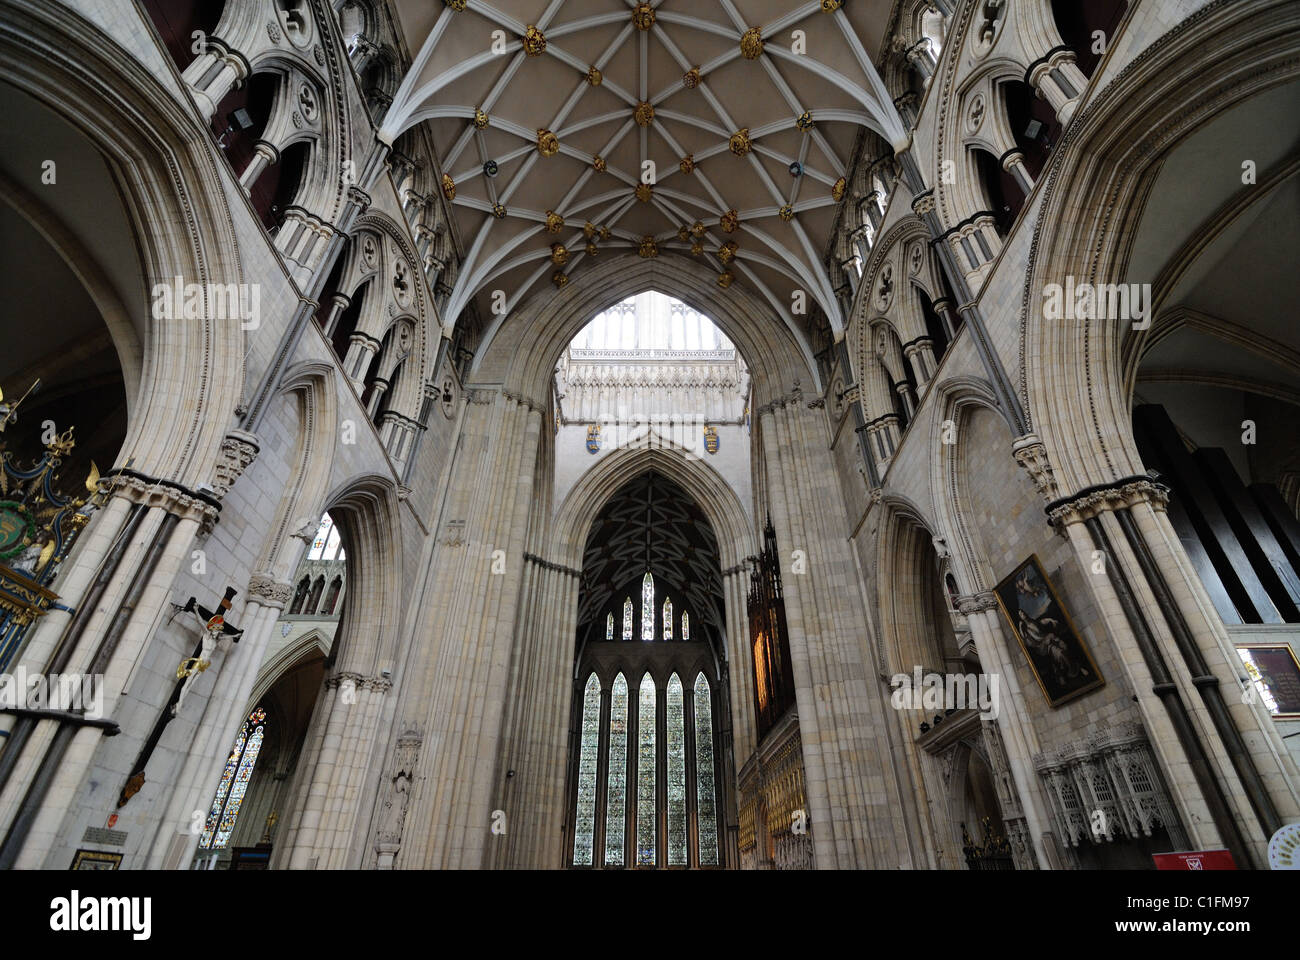 Innere des York Minster, ein Wahrzeichen Kathedrale in York, England. Stockfoto